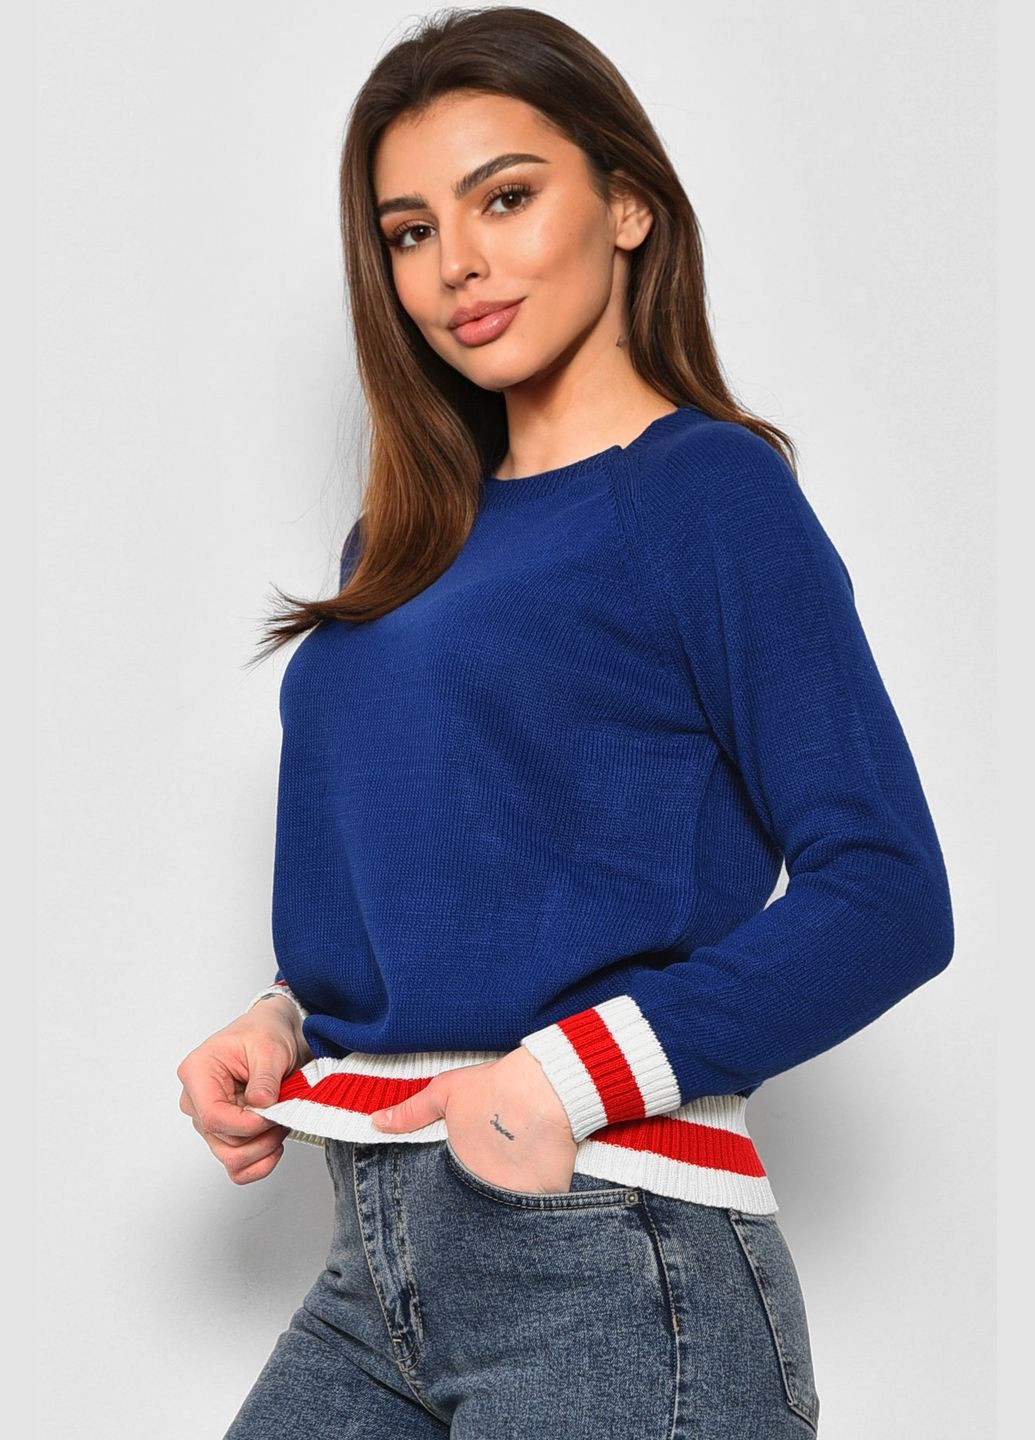 Синий демисезонный свитер женский синего цвета пуловер Let's Shop